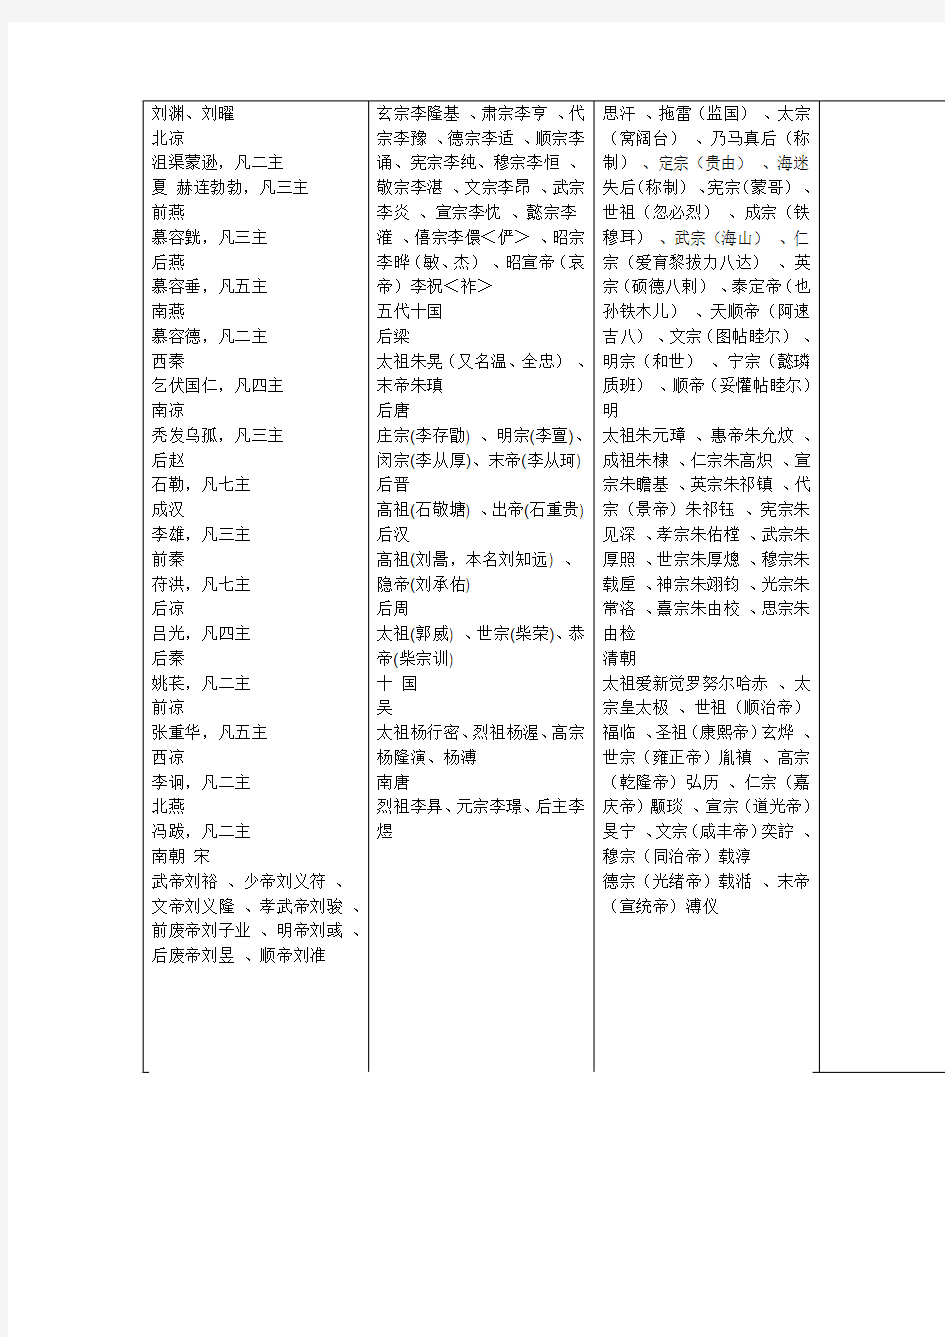 中国历史朝代顺序表以及各朝皇帝顺序